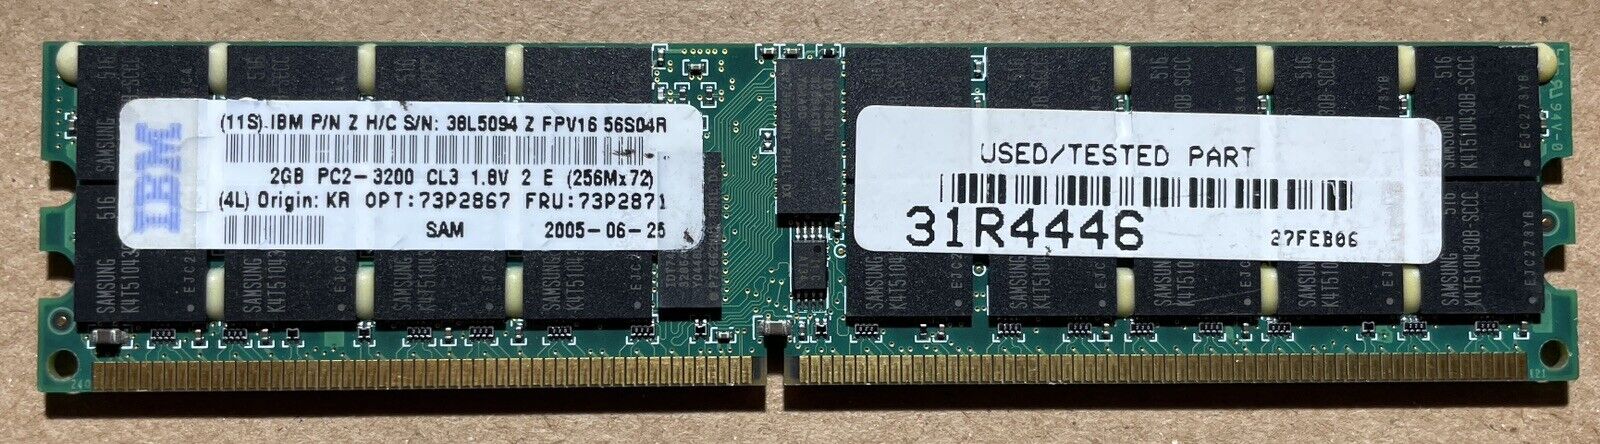 IBM SAMSUNG FRU 23P2871 PC2-3200R DDR2-400MHz 2GB ECC REG 2Rx4 CL3